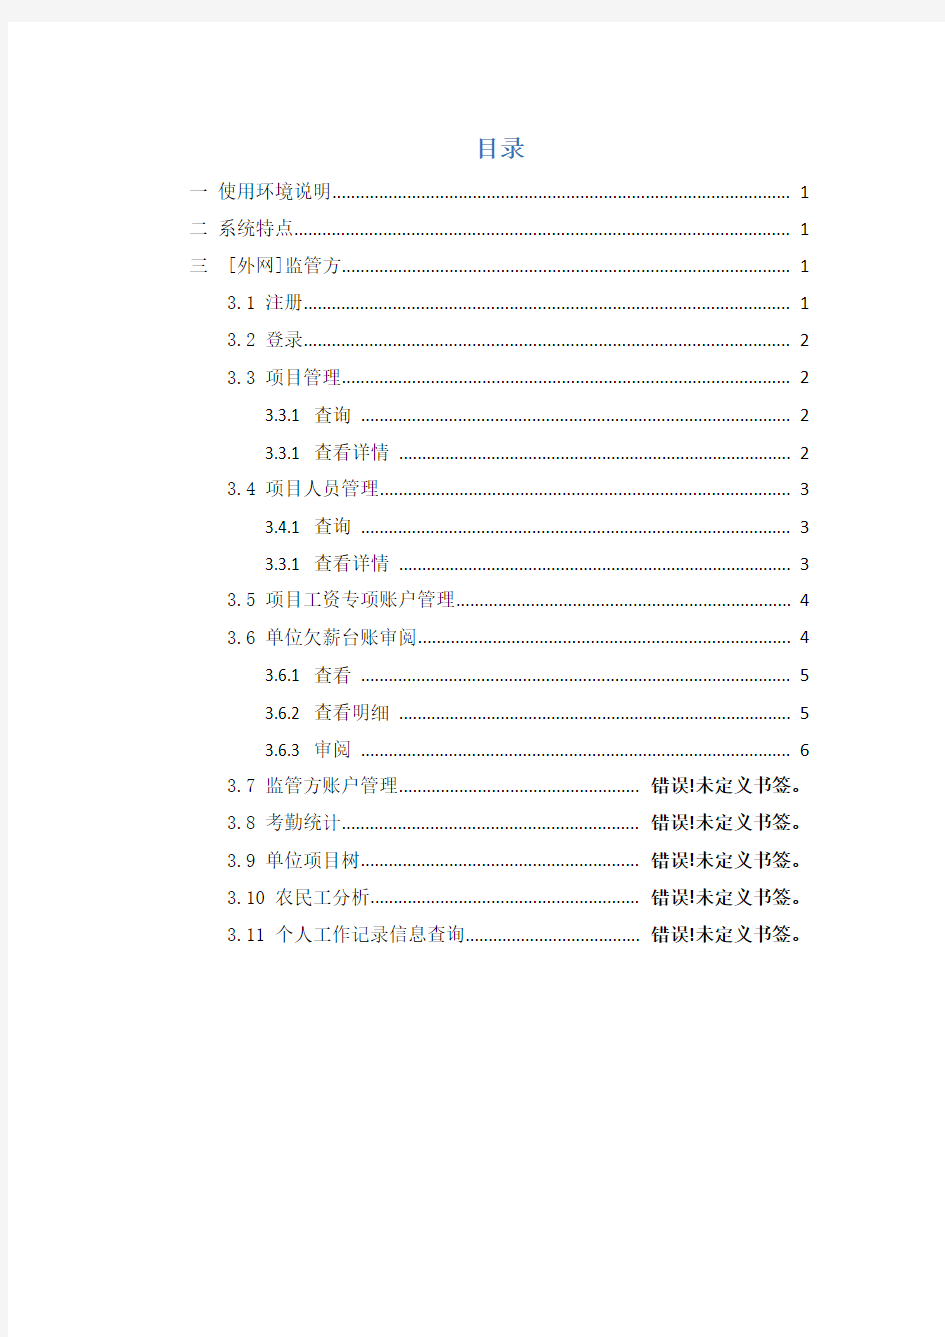 贵州省农民工实名制管理大数据平台[平台版-项目法人]-使用手册